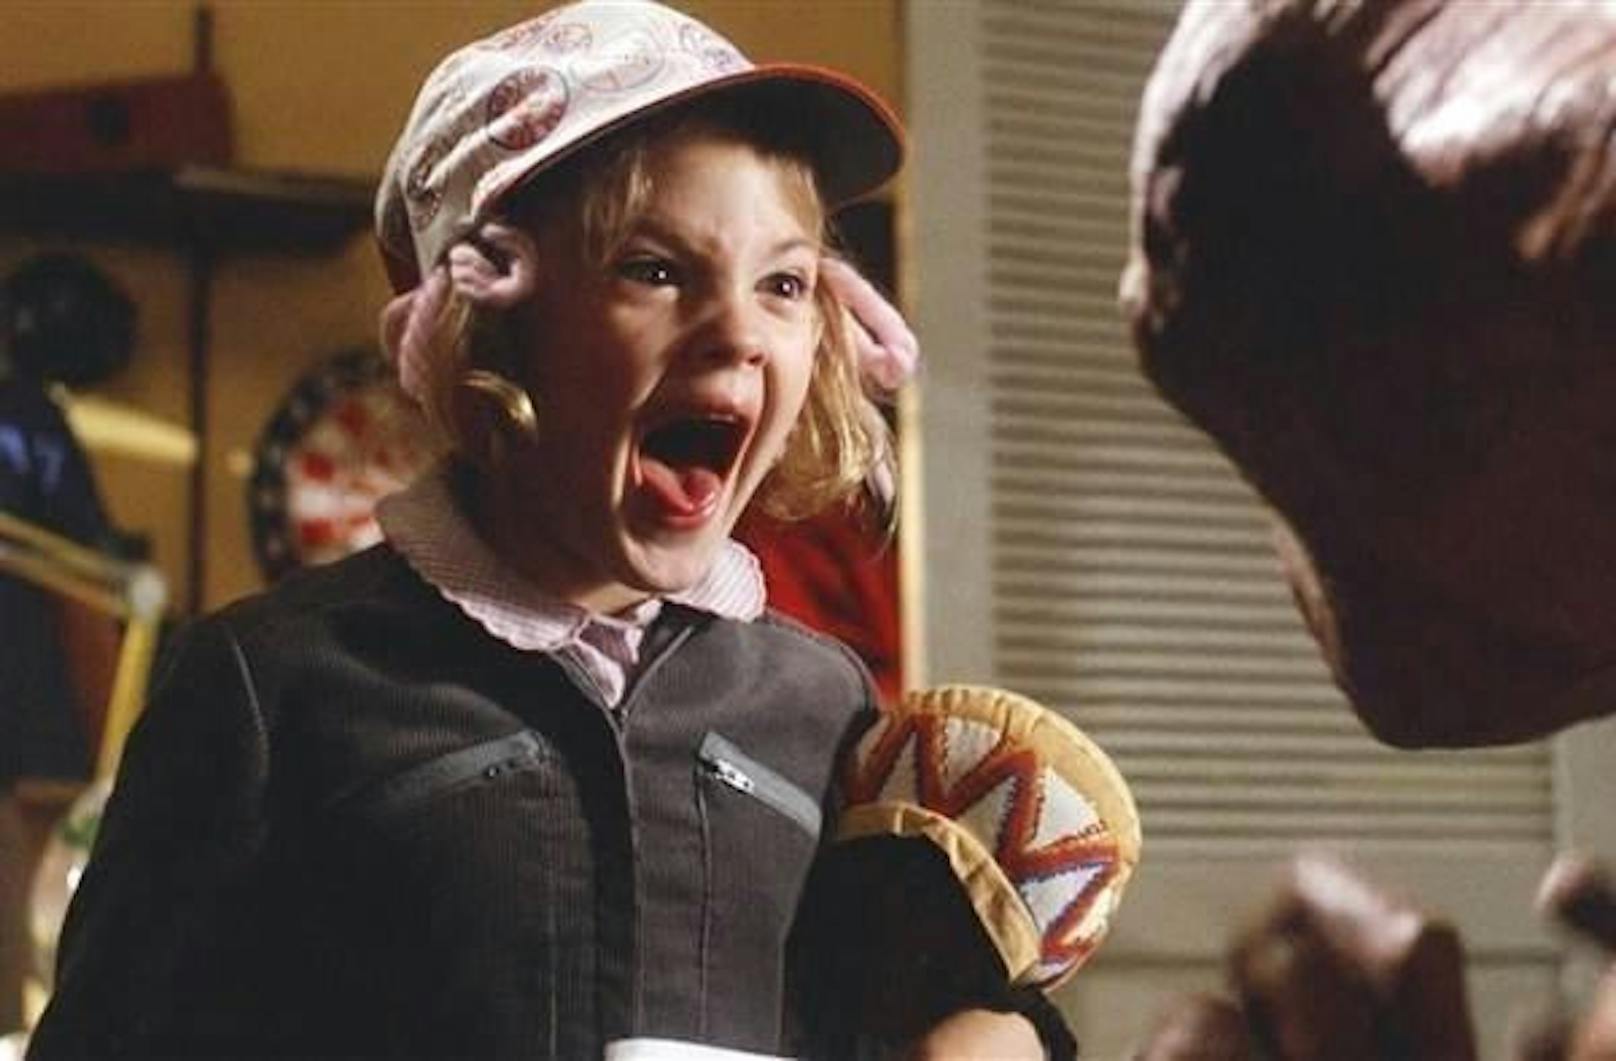 Drew Barrymore in "E.T" (1982)